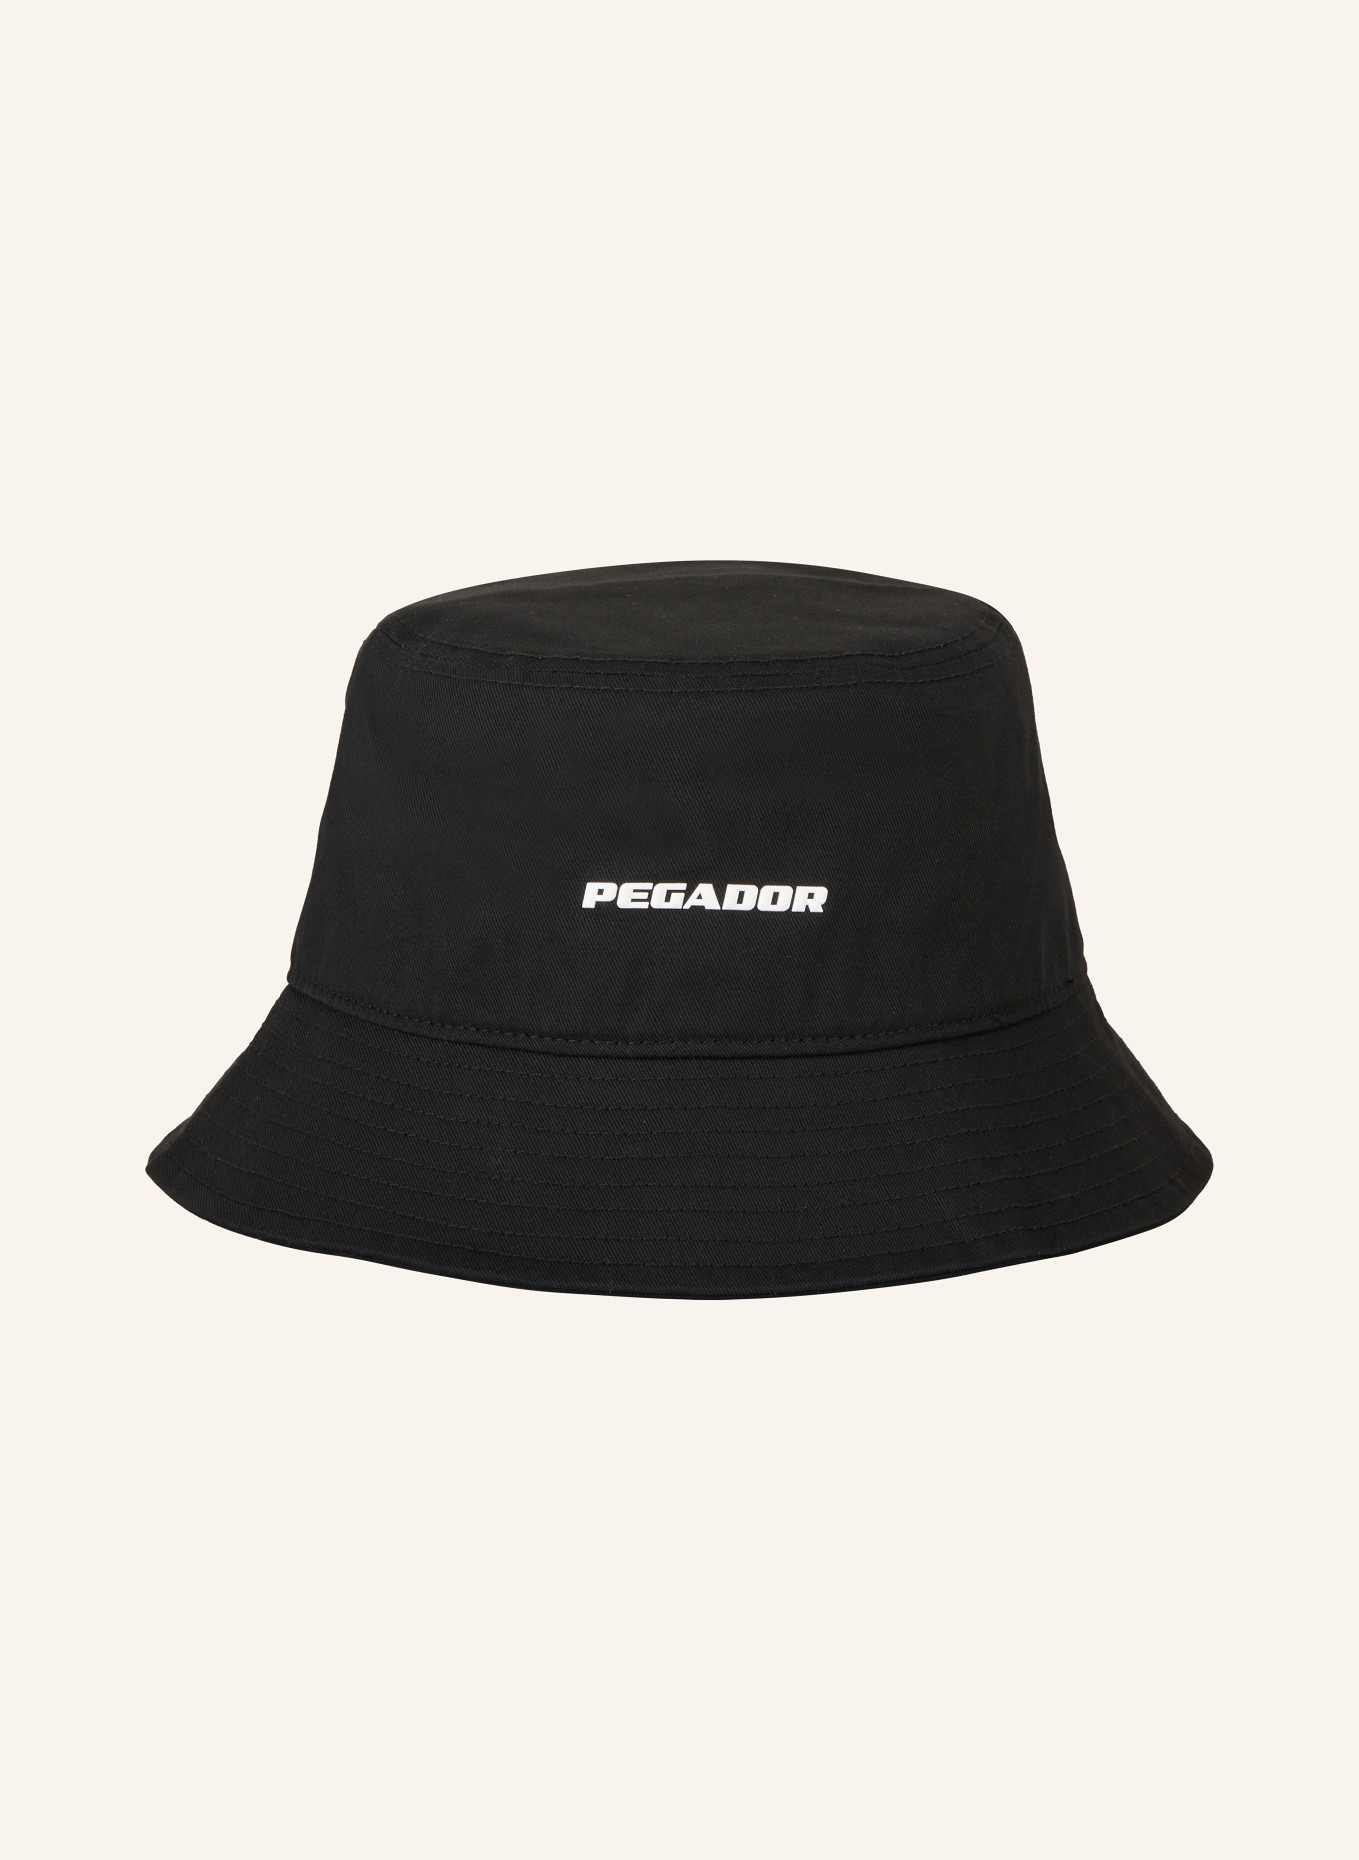 PEGADOR Bucket hat, Color: BLACK (Image 2)